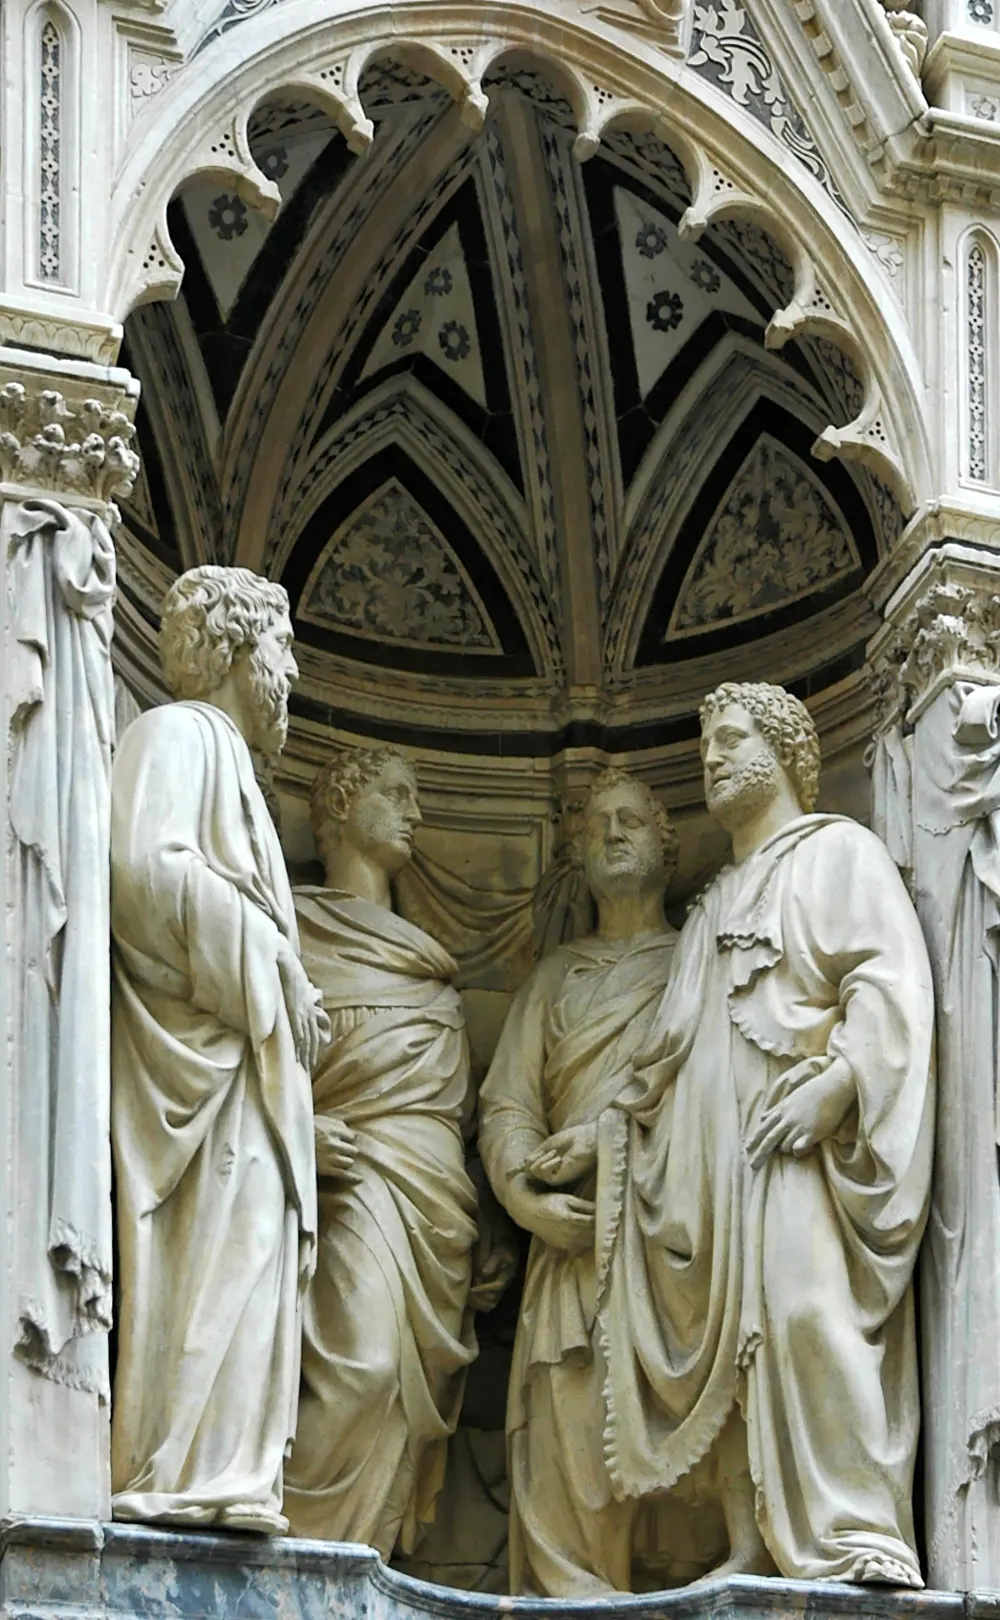 cuatro santos coronados nanni di banco